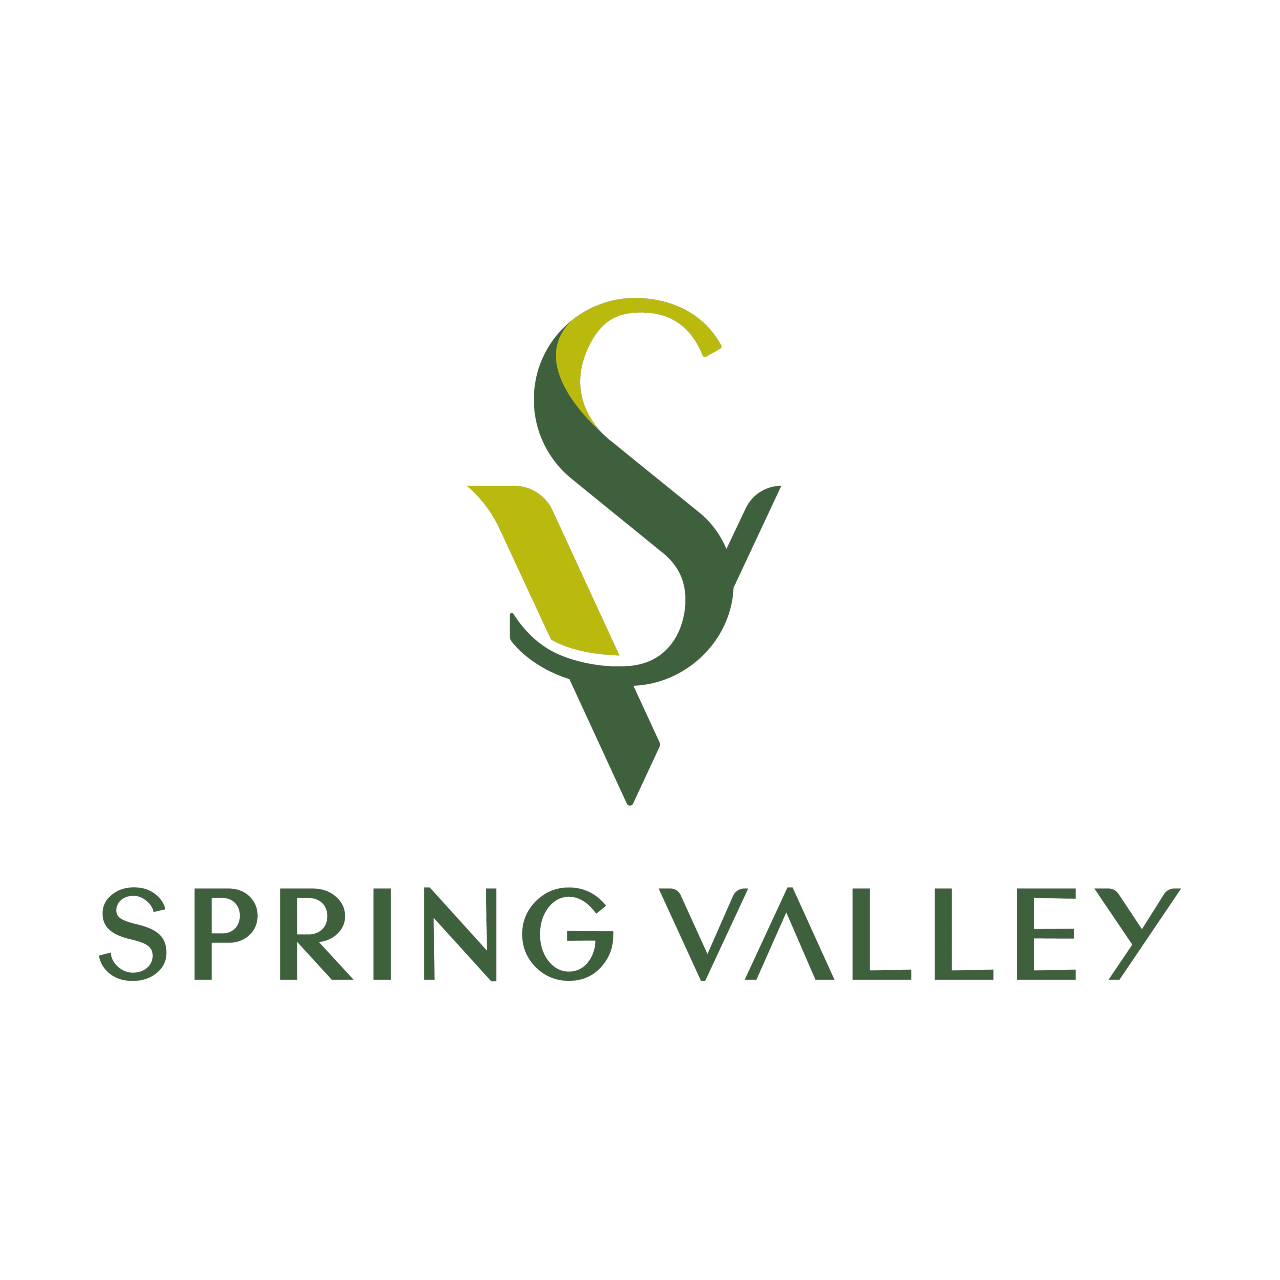 Spring Valley